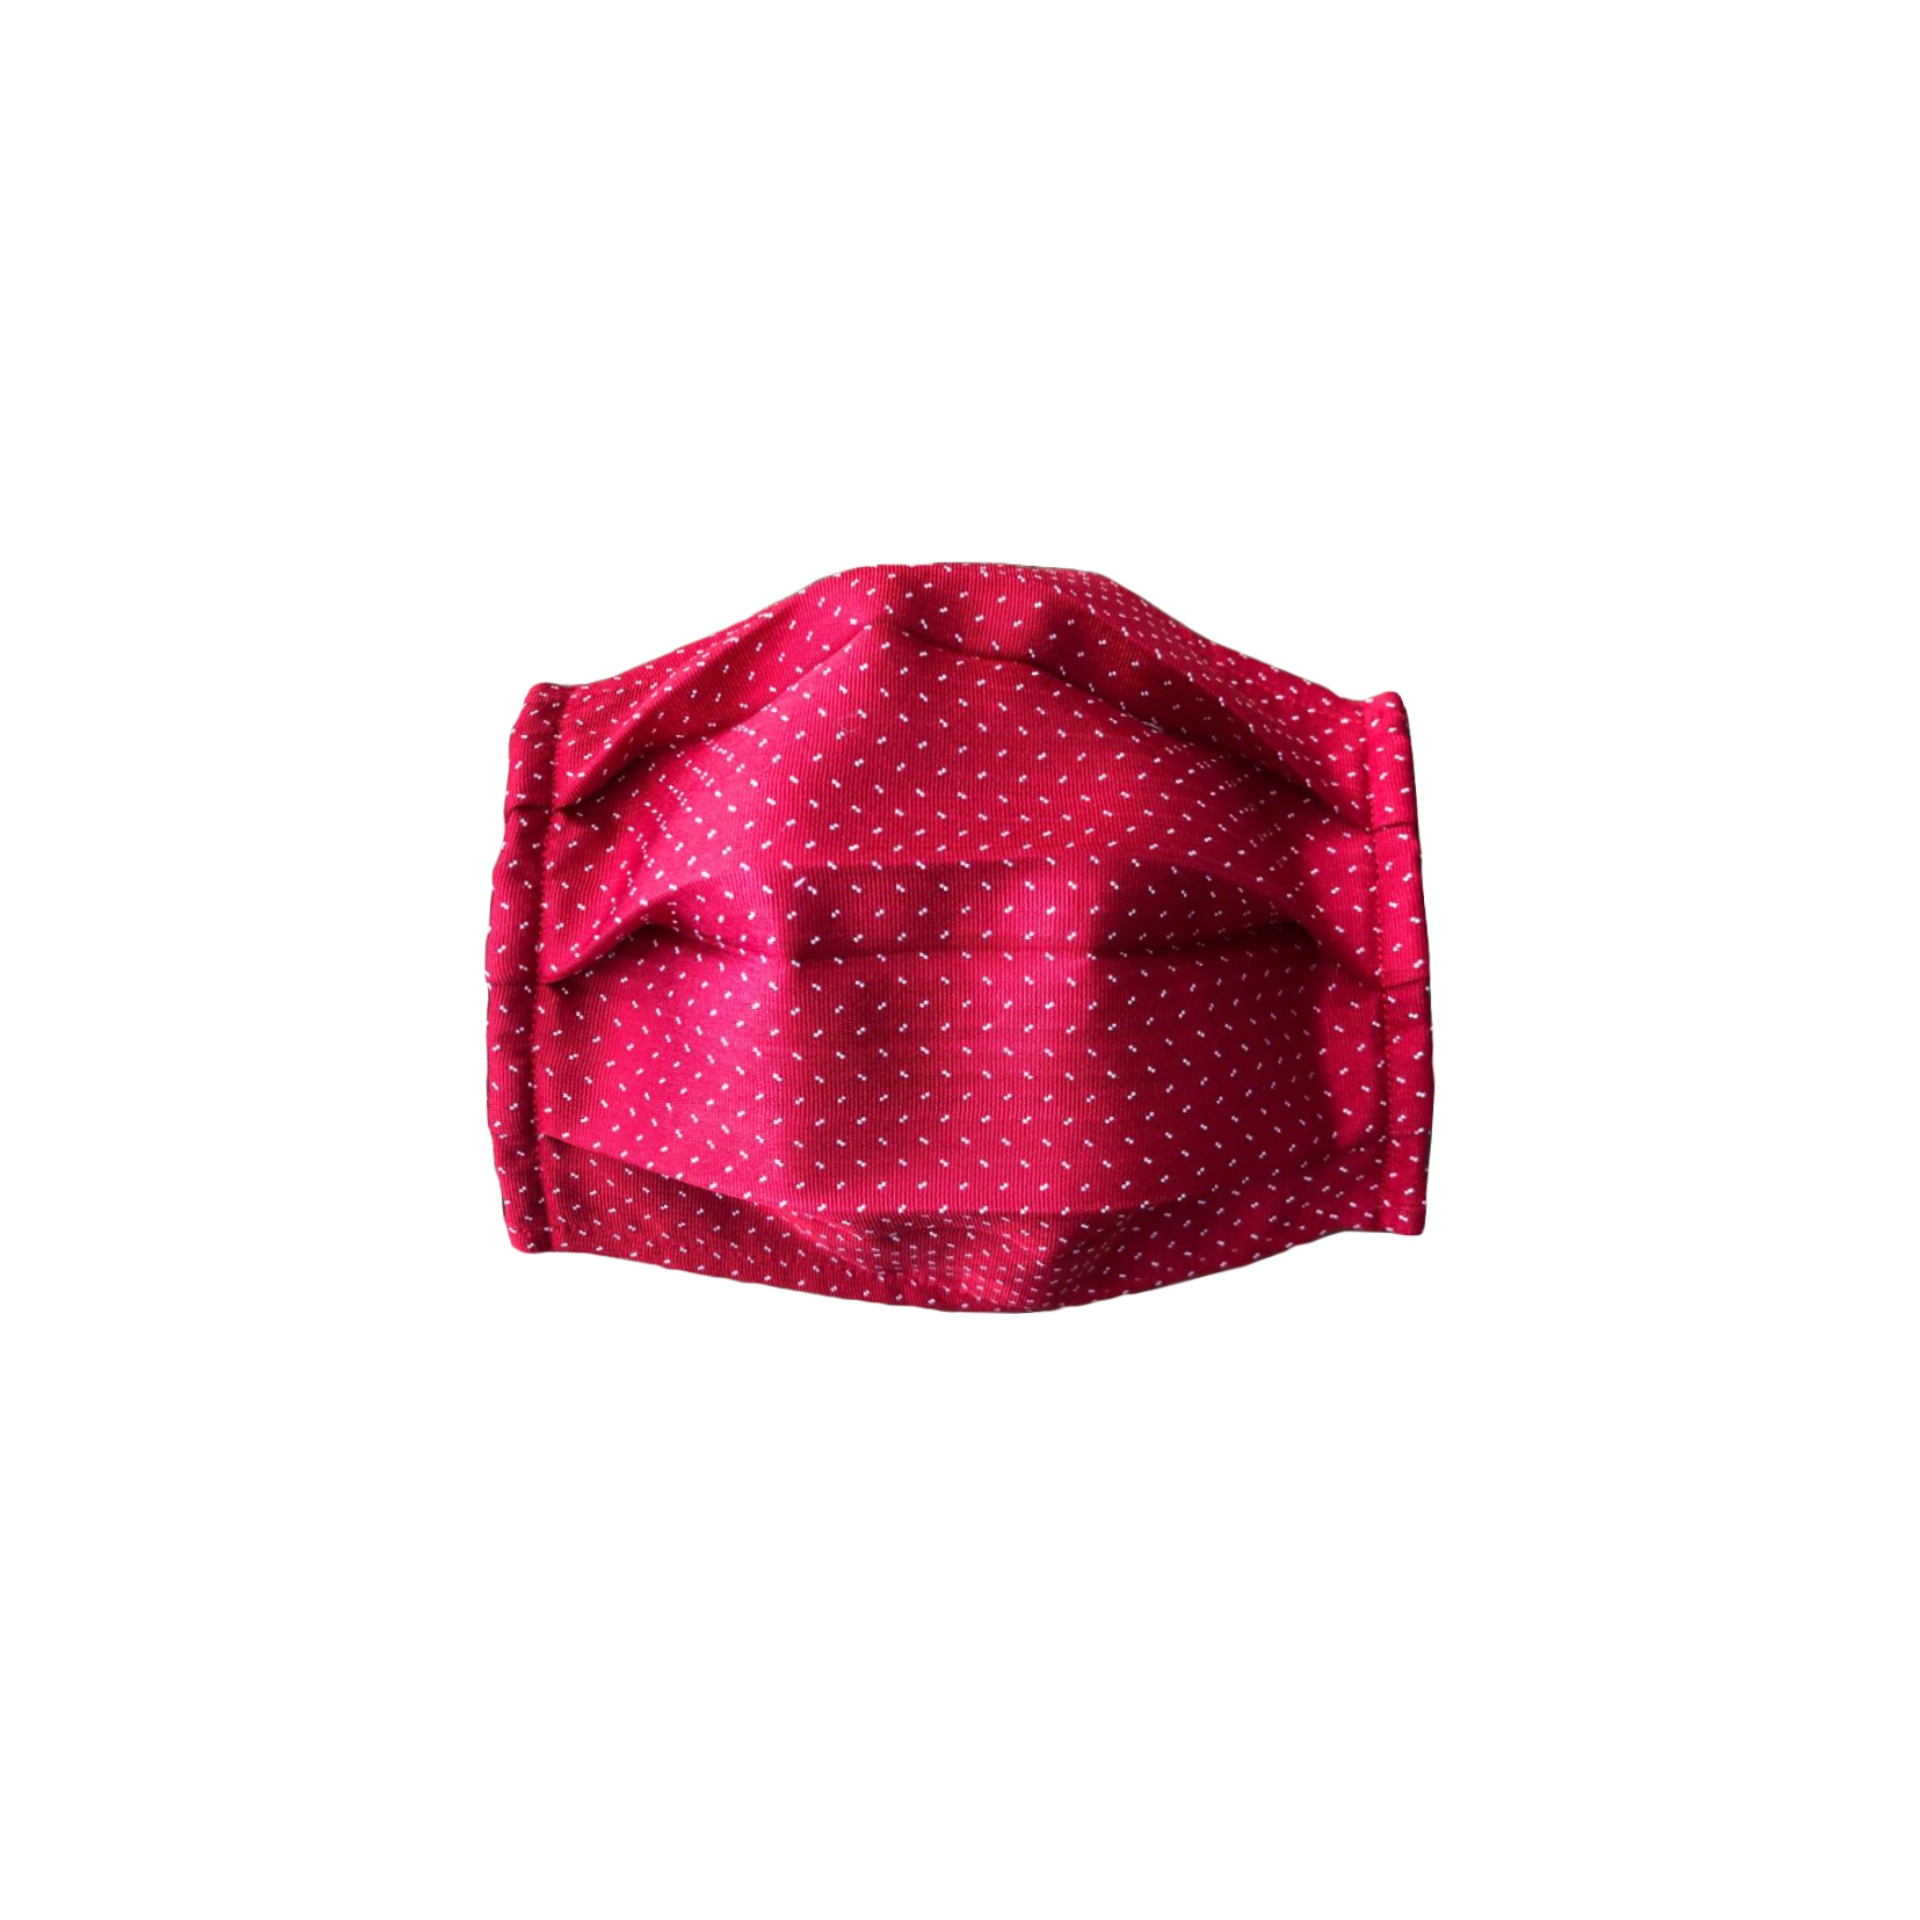 Wiederverwendbare stoffmaske seiden, rot punkte design